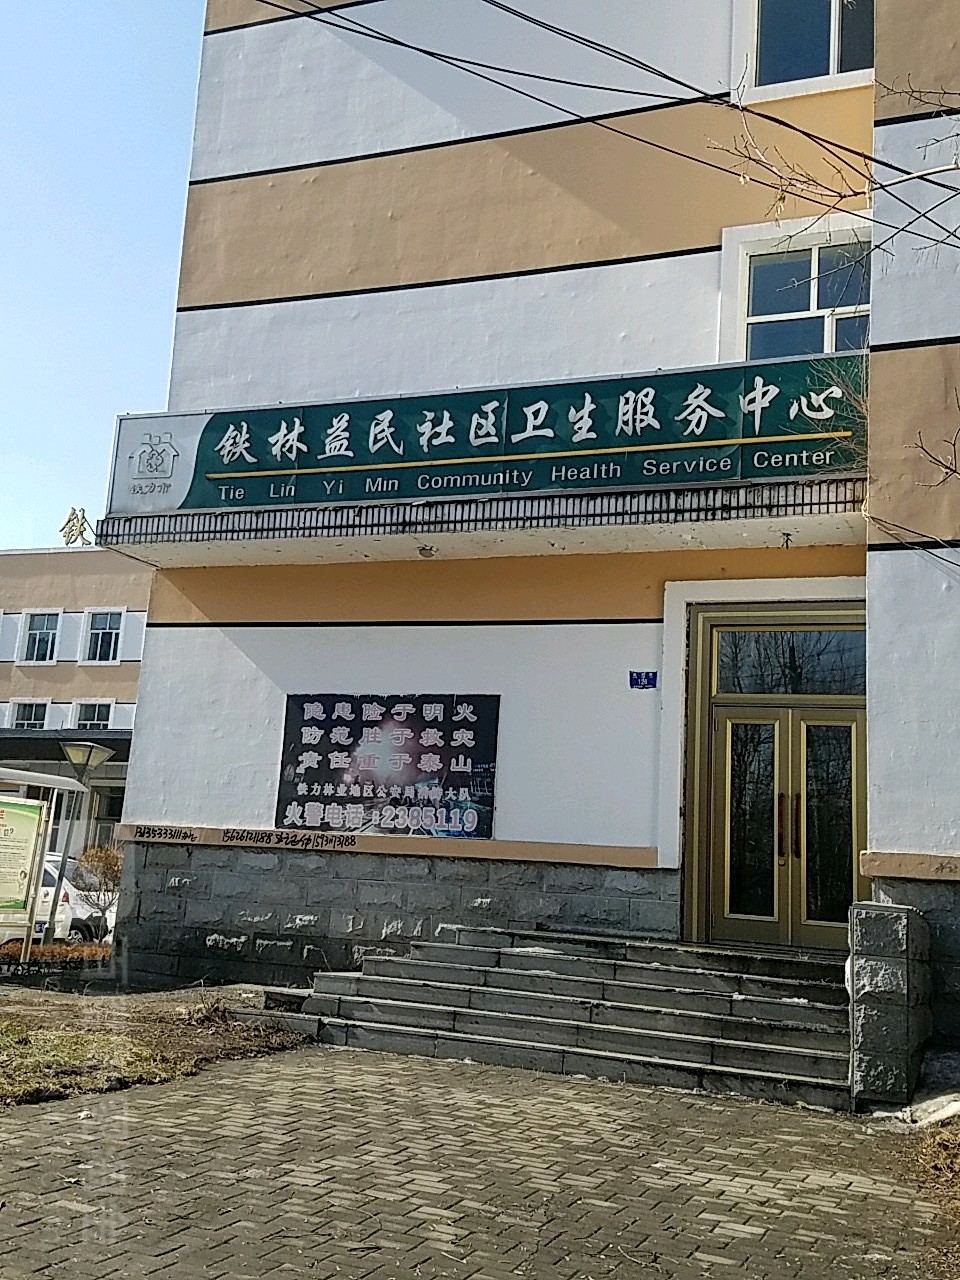 鐵林益民社區衛生服務中心